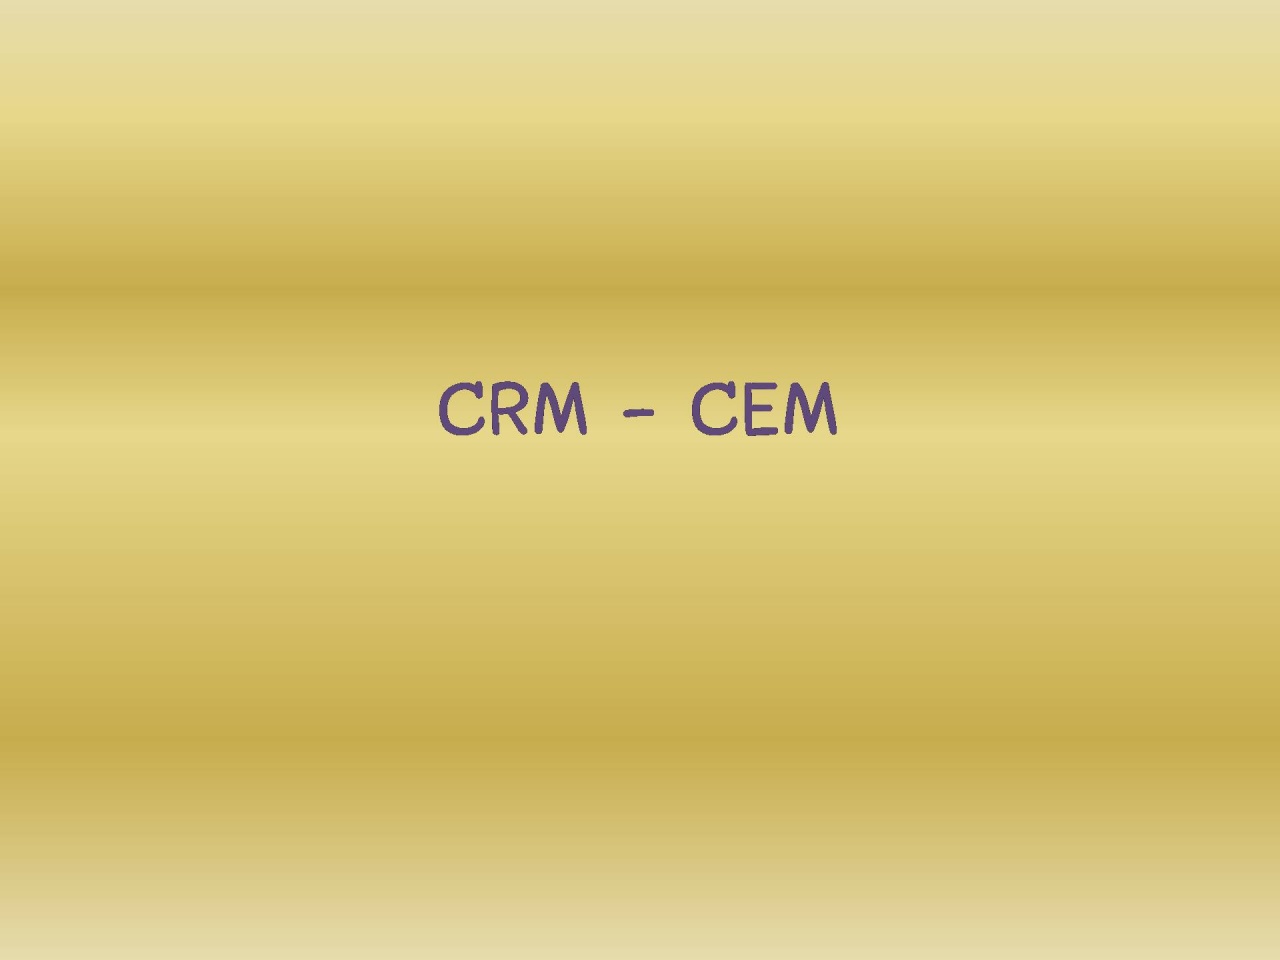 การบริหารความสัมพันธ์และสร้างประสบการณ์ที่ดีให้กับลูกค้า CRM CEM  